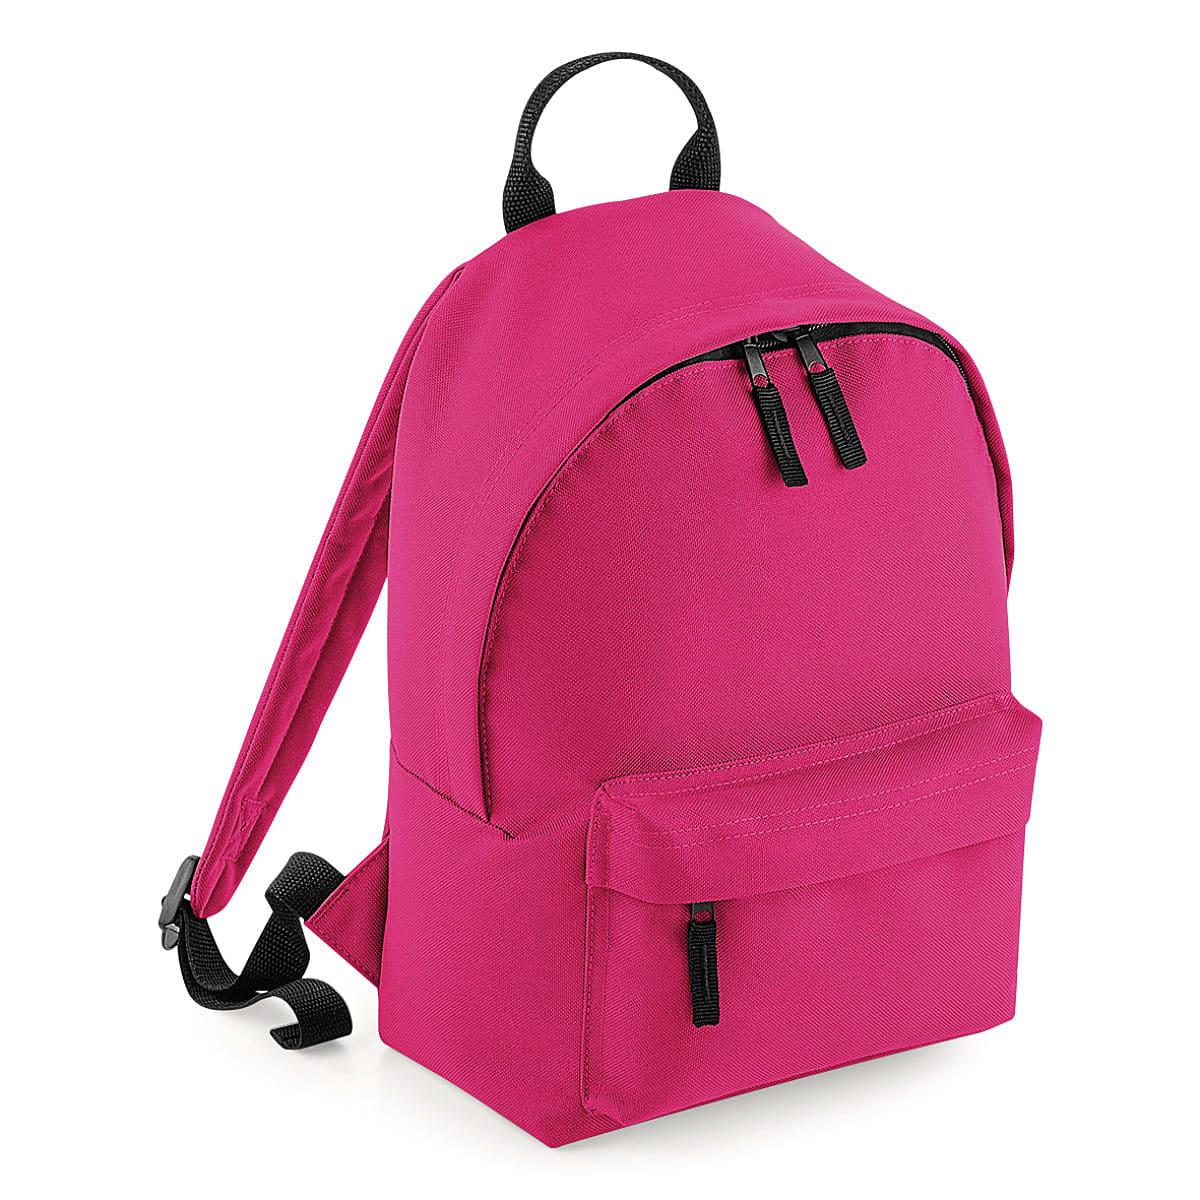 Bagbase Mini Fashion Backpack in Fuchsia (Product Code: BG125S)